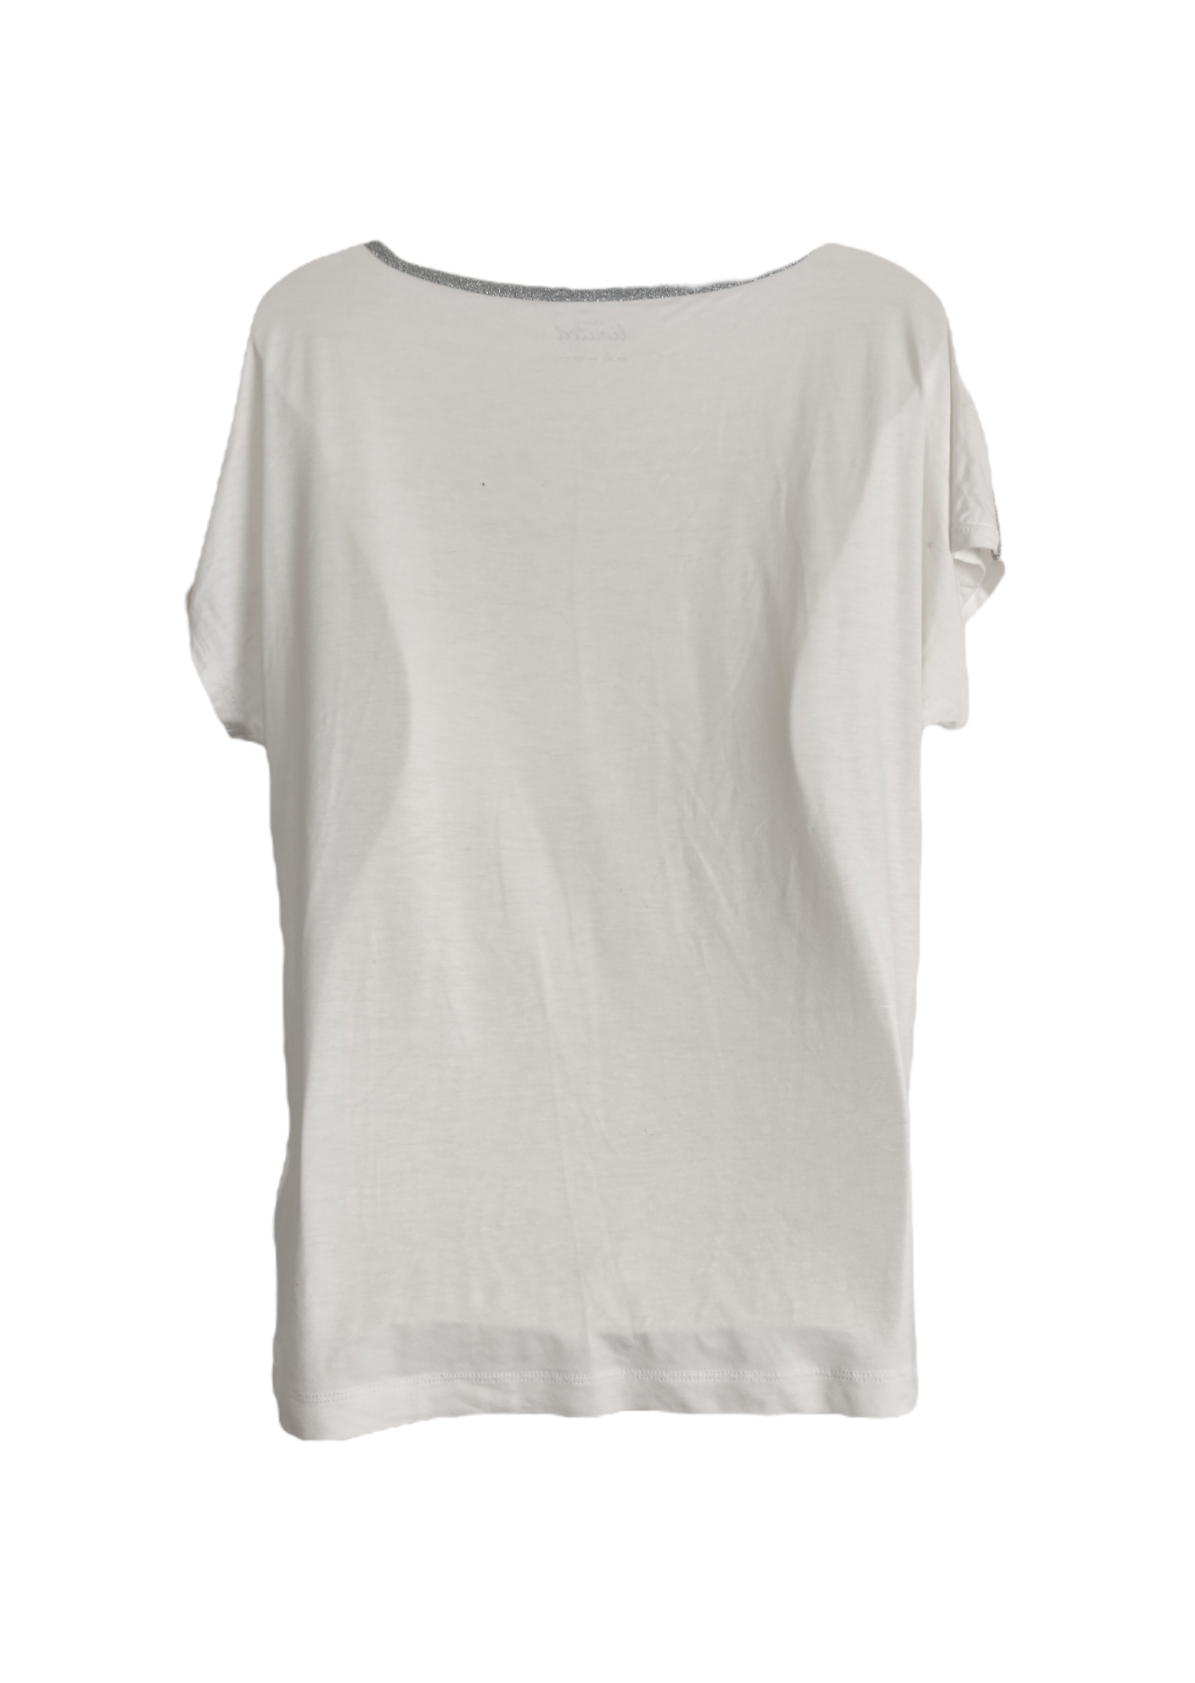 Γυναικεία Μπλούζα TCHIBO σε Λευκό χρώμα με Ασημί Λεπτομέρειες (Large)